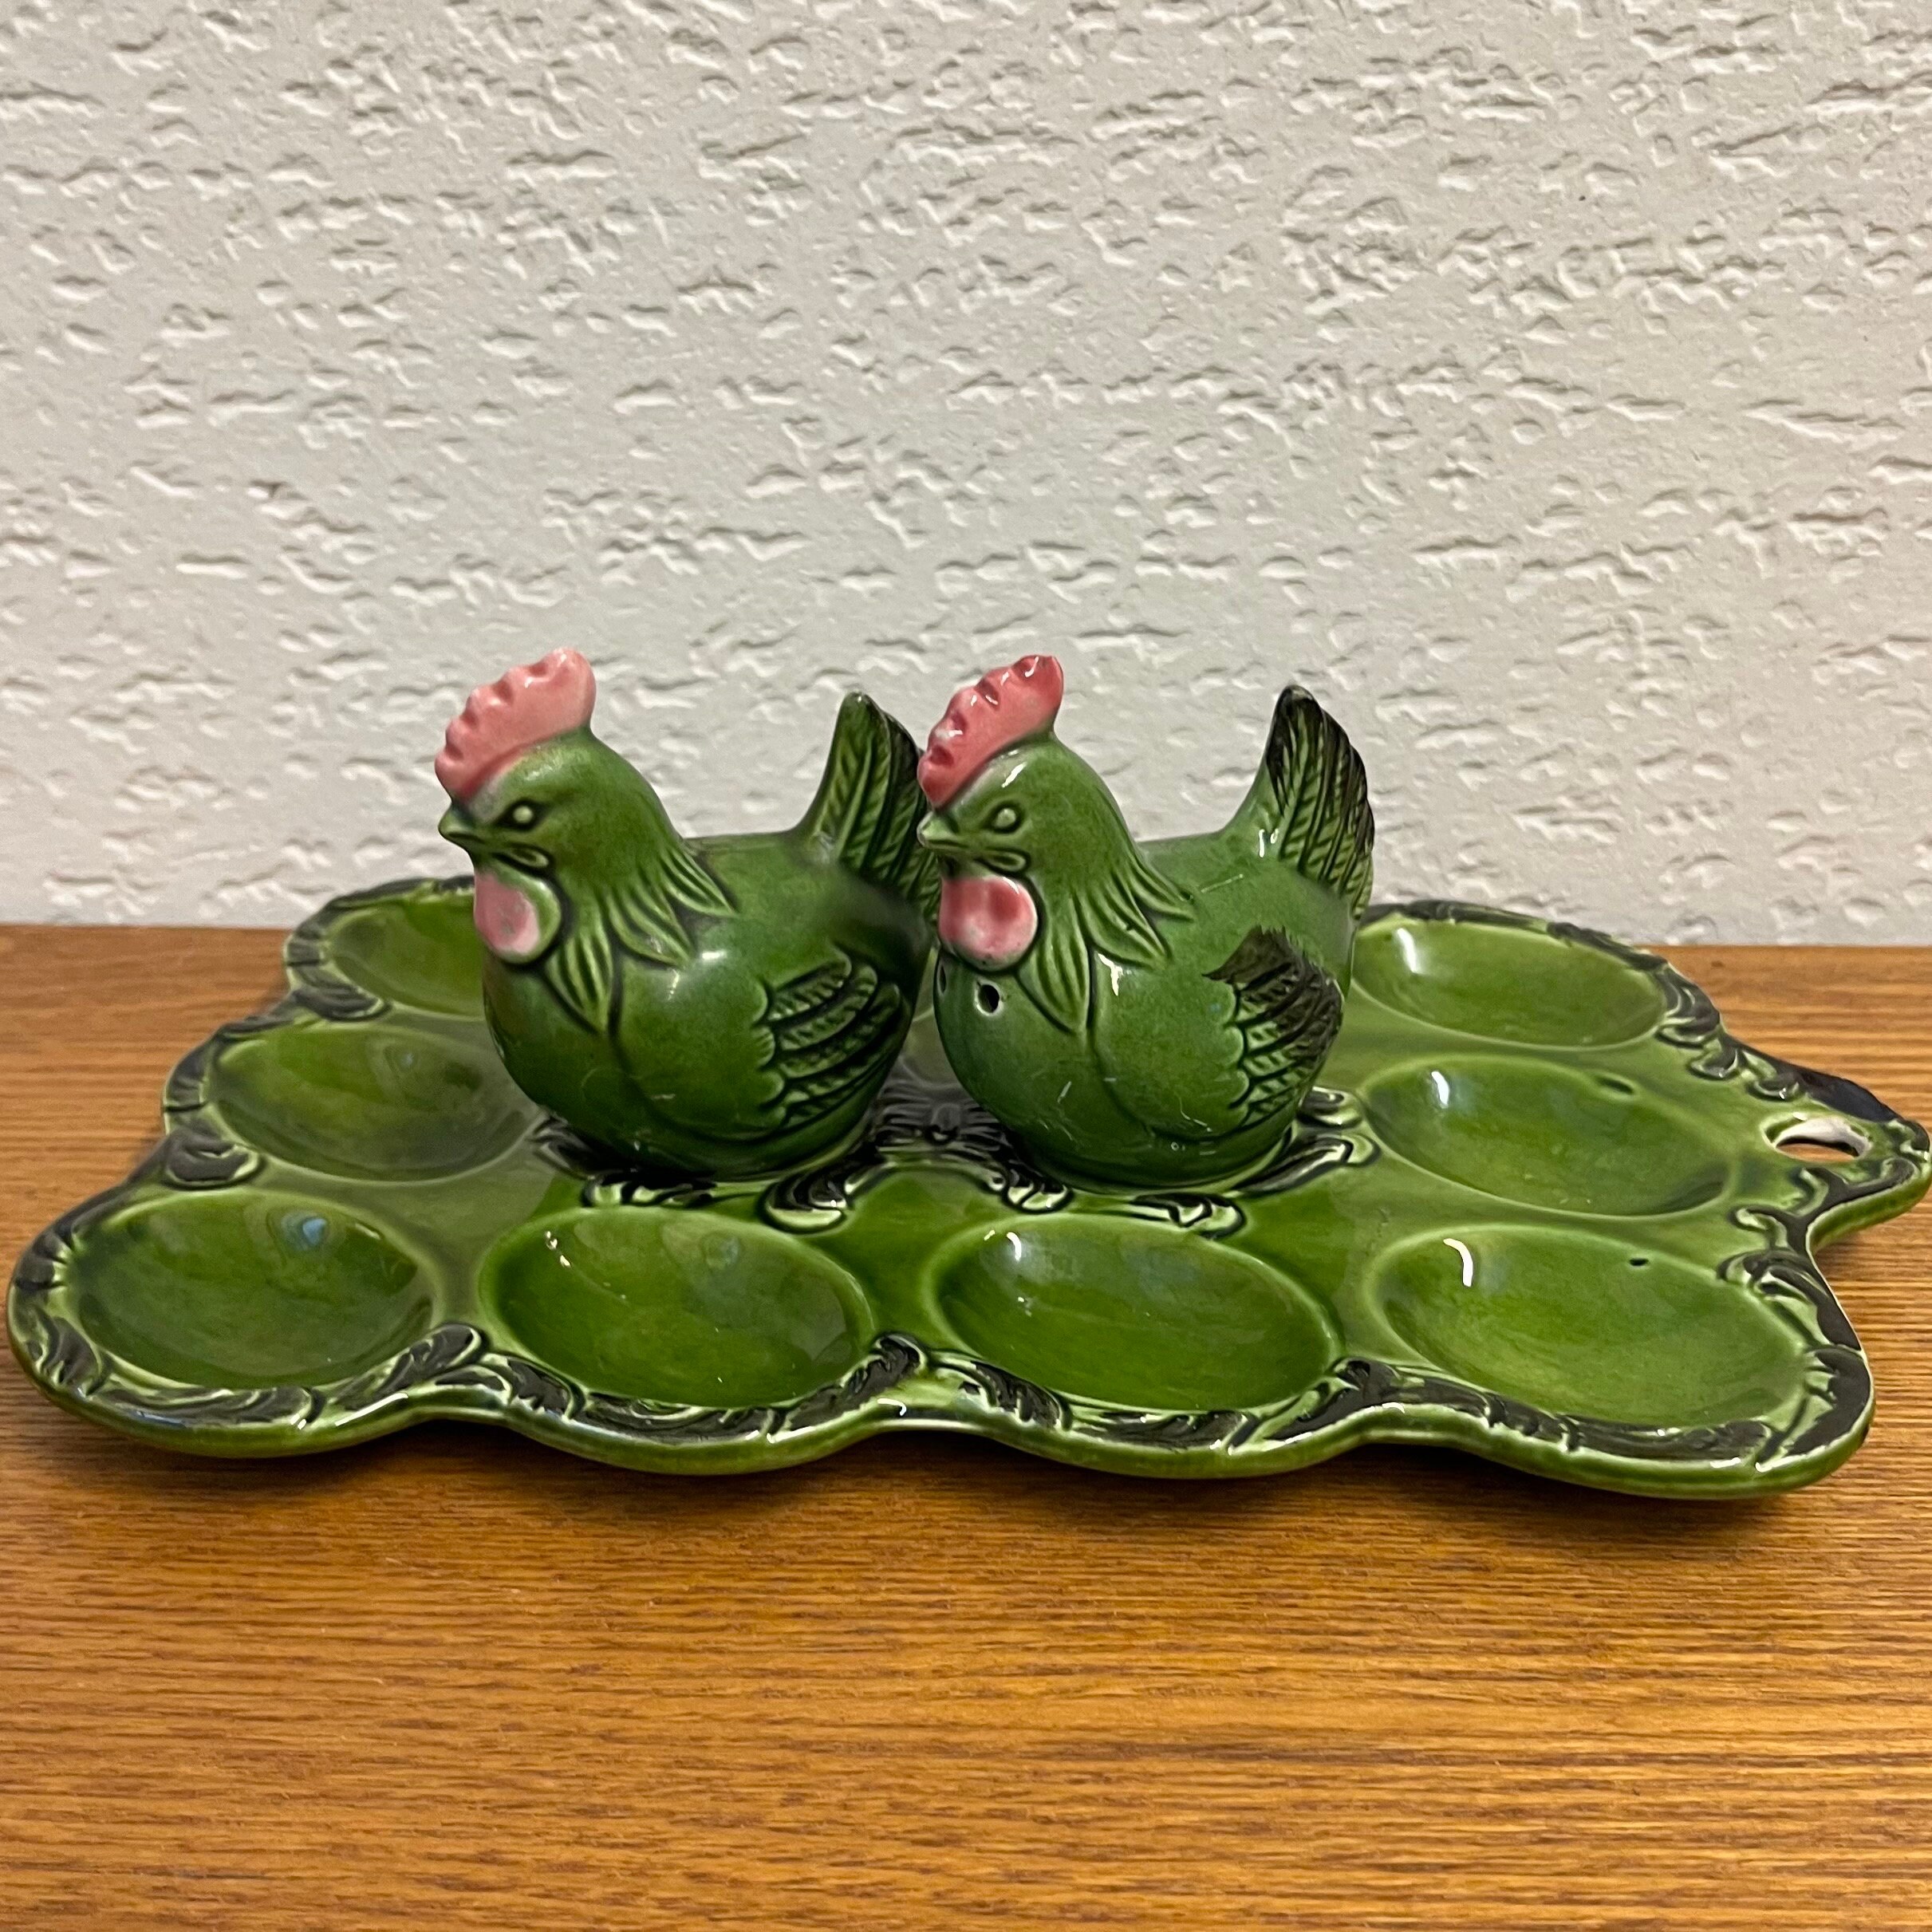 Vintage Deviled Egg Plate - Green Ceramic Chicken Serving Dish